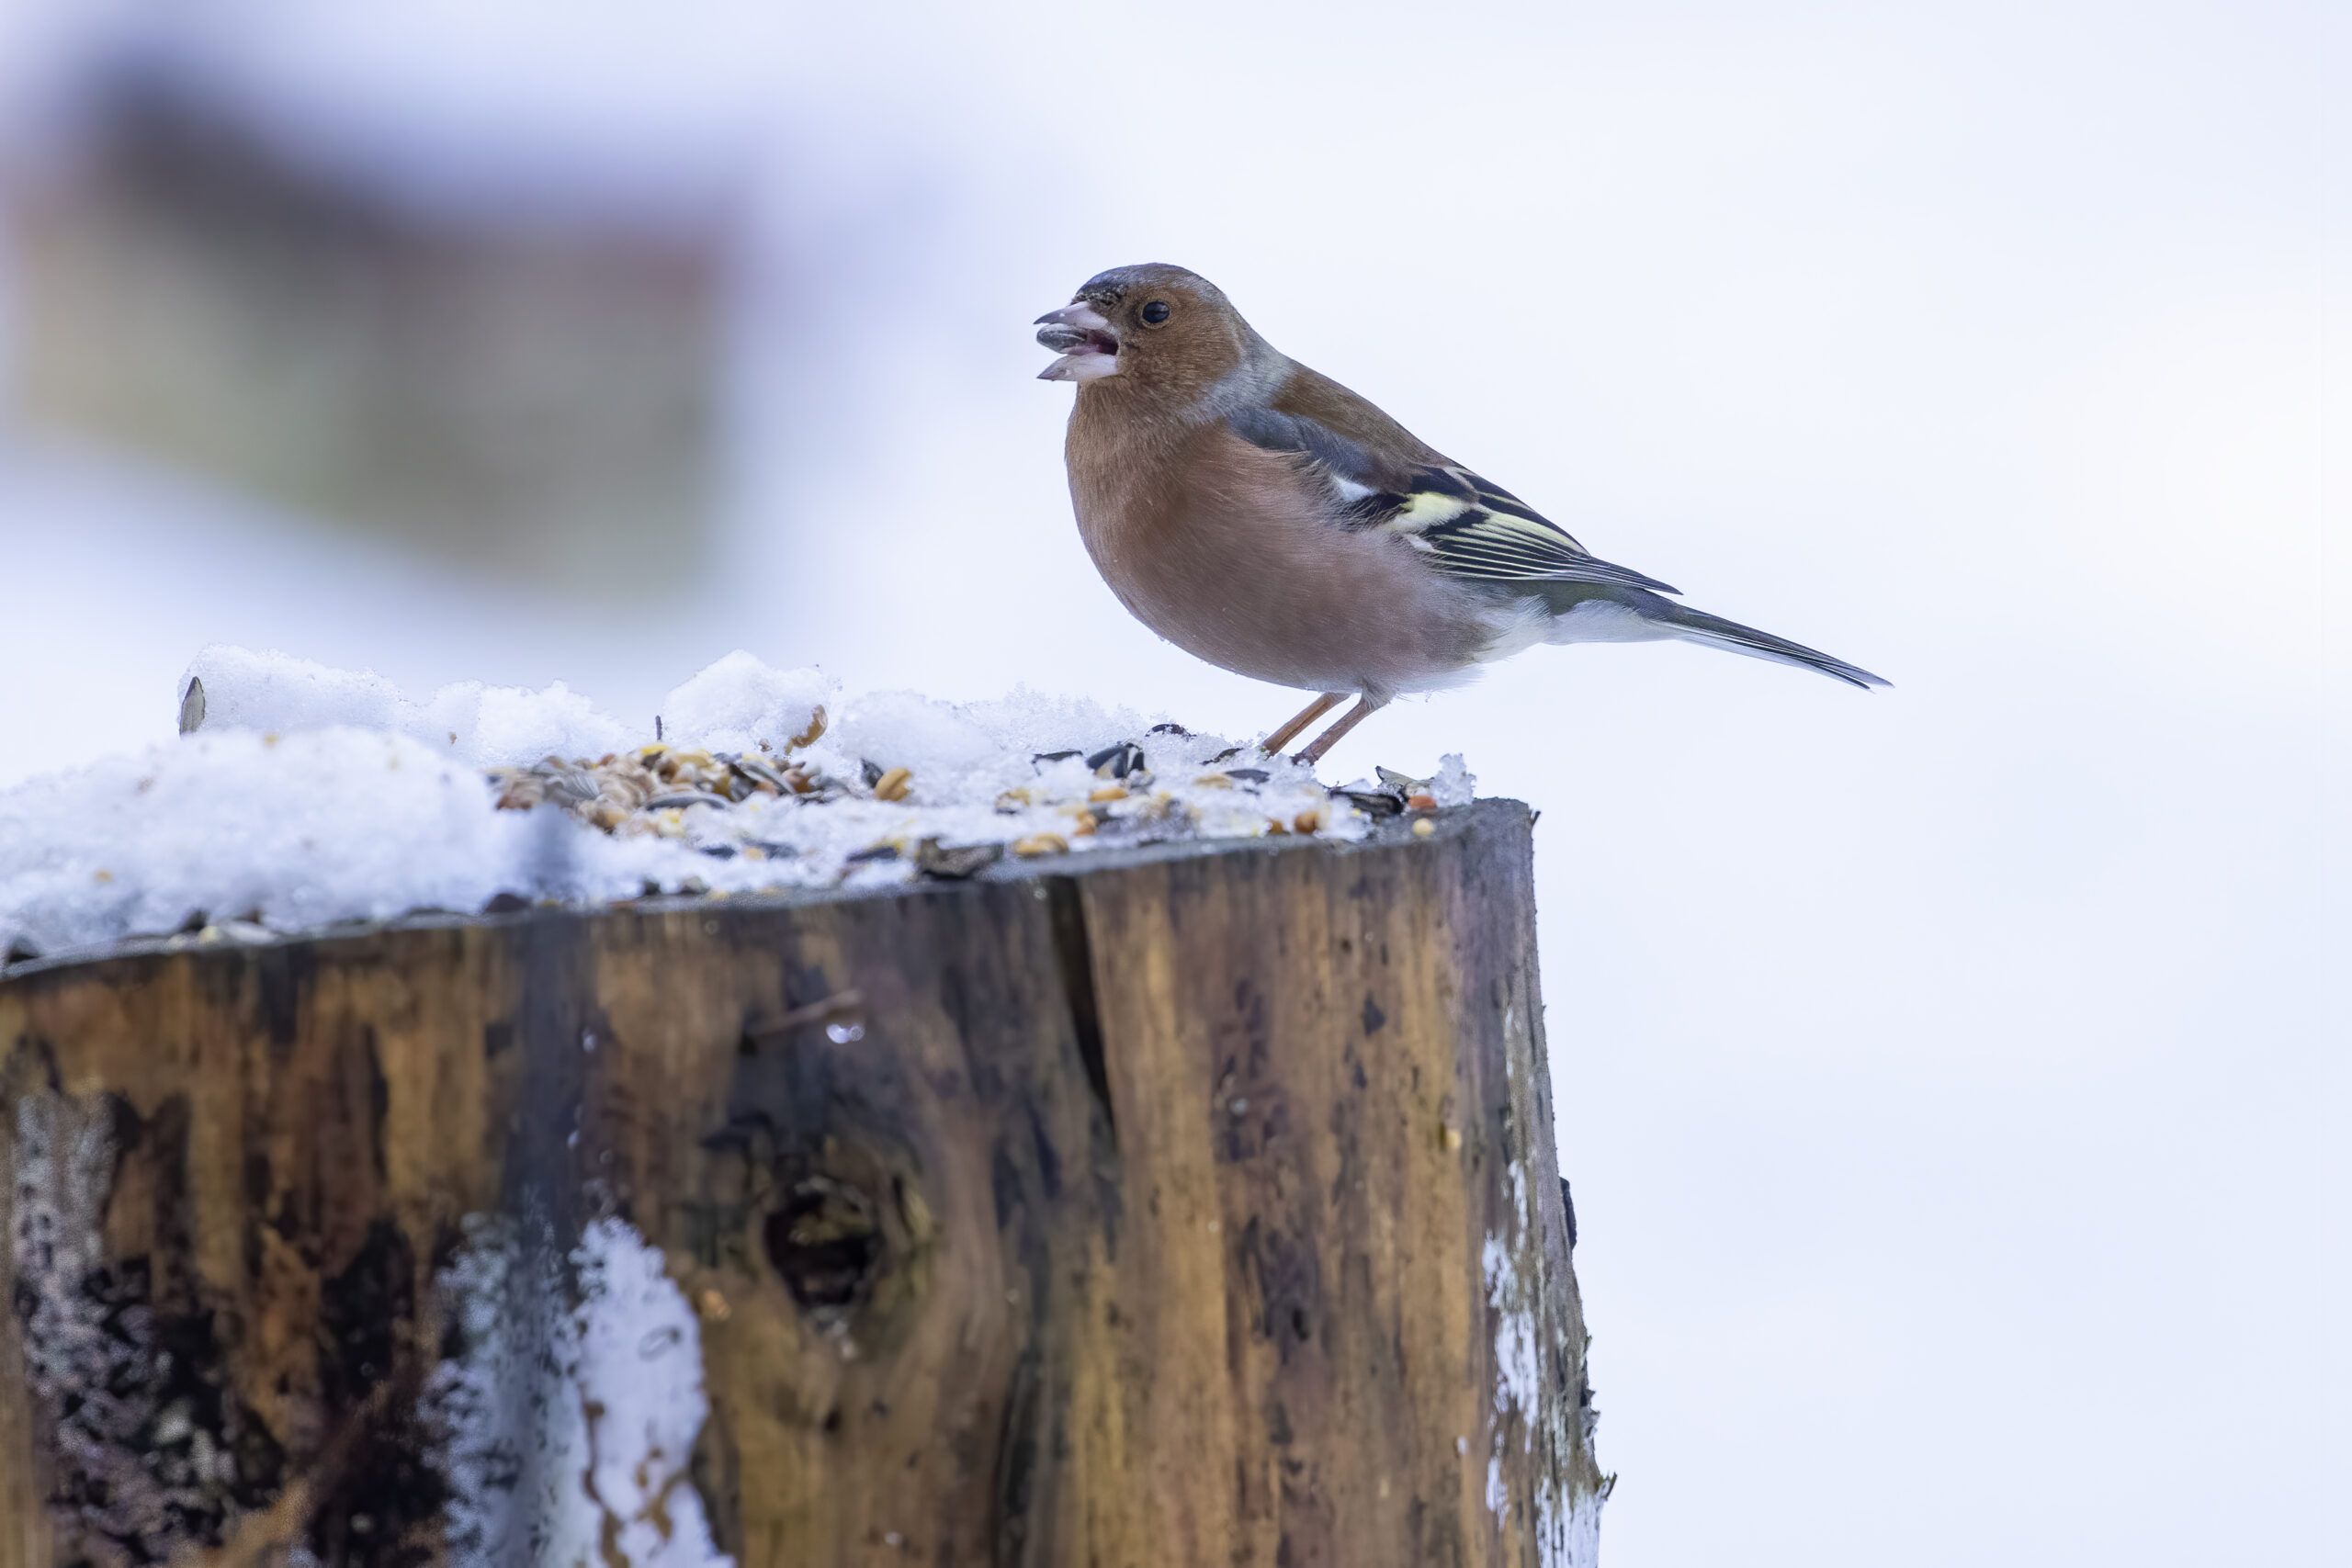 Help vogels de winter door